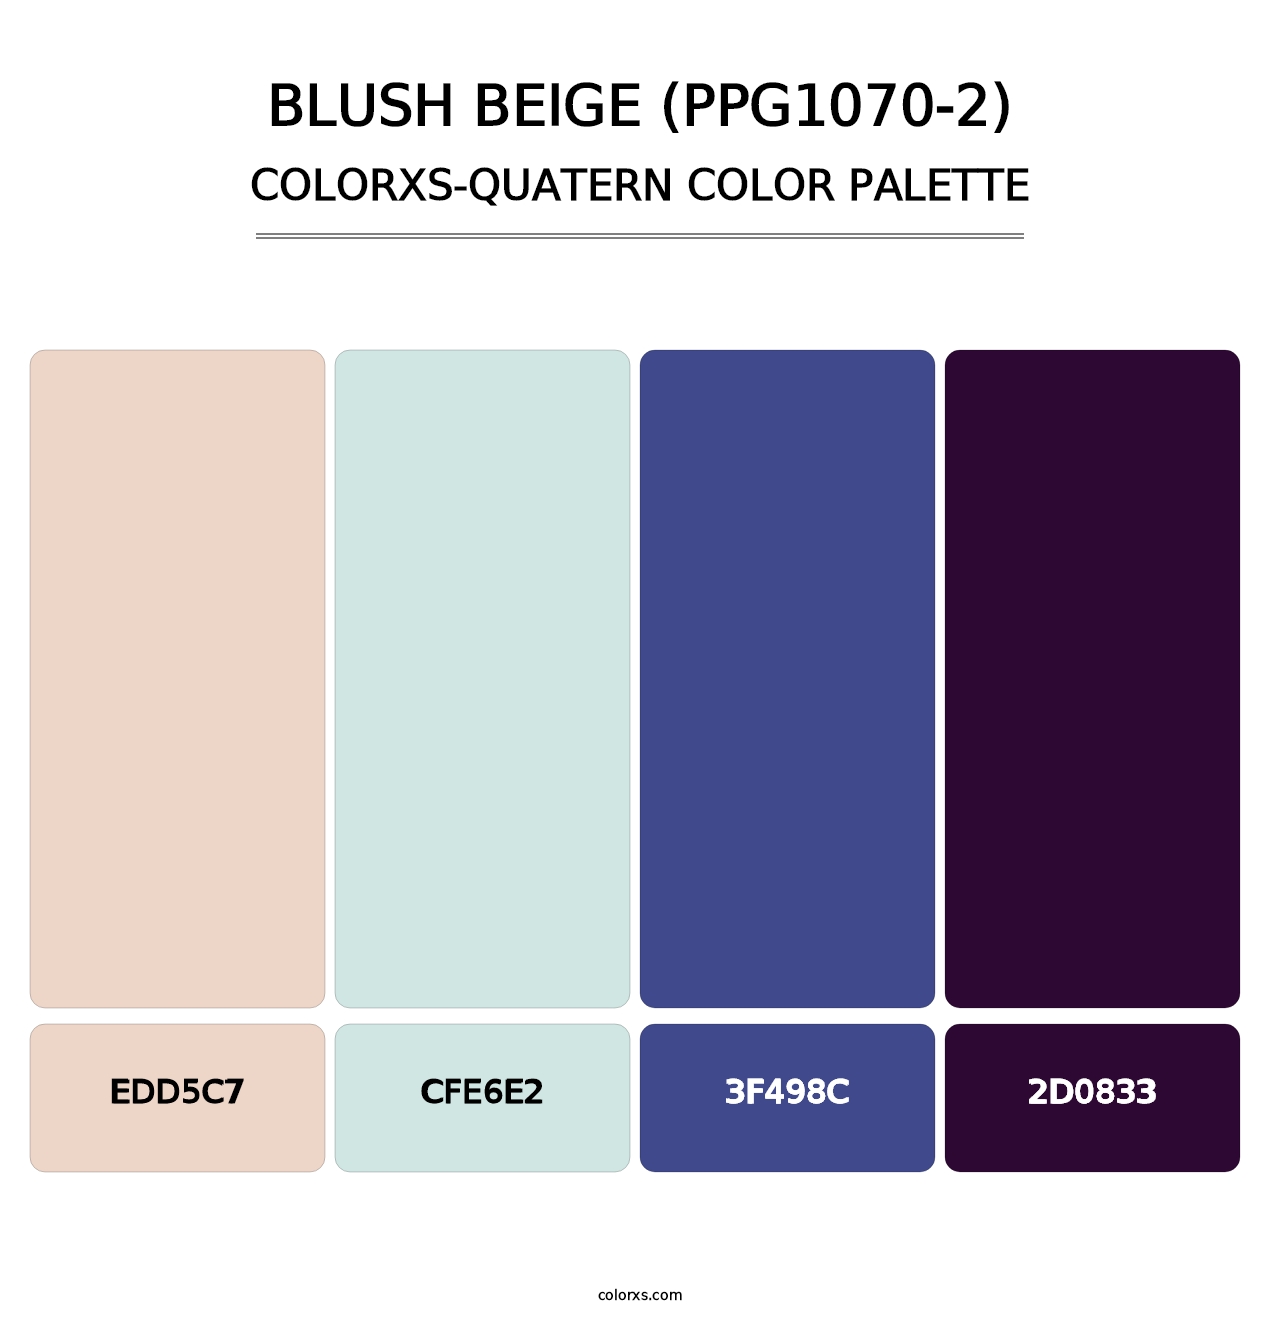 Blush Beige (PPG1070-2) - Colorxs Quatern Palette